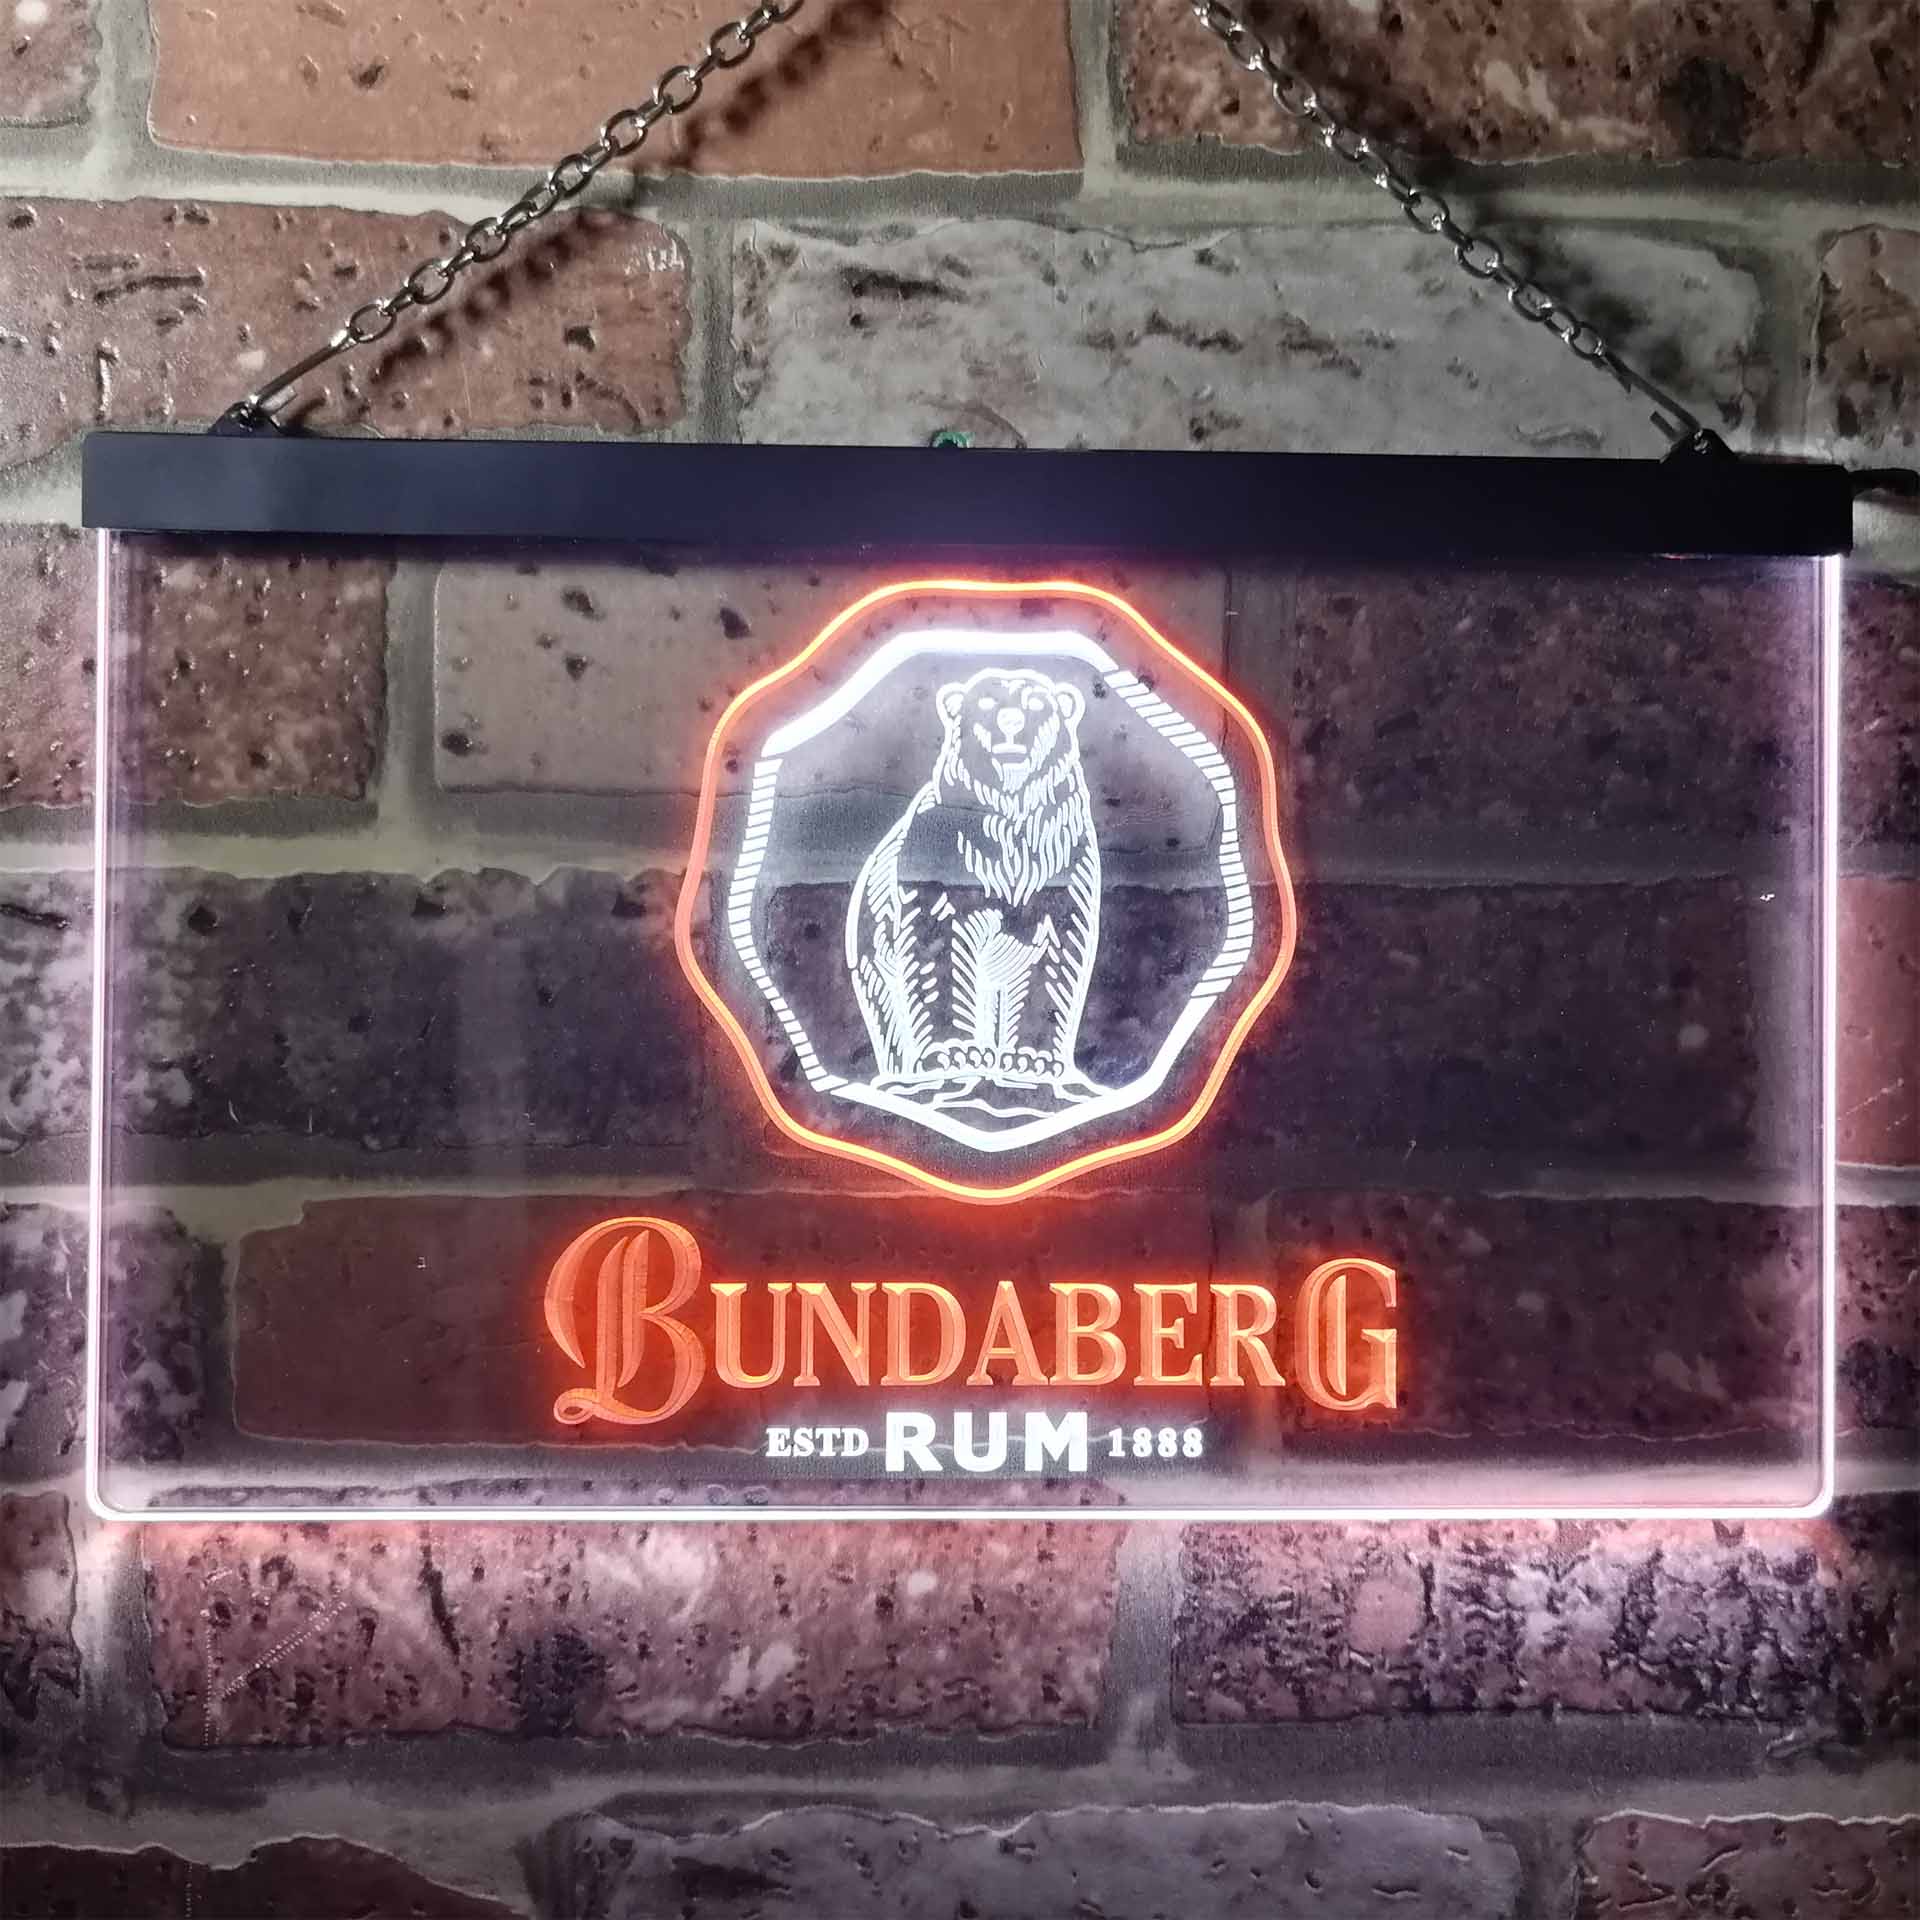 Bundaberg Rum Dual Color LED Neon Sign ProLedSign